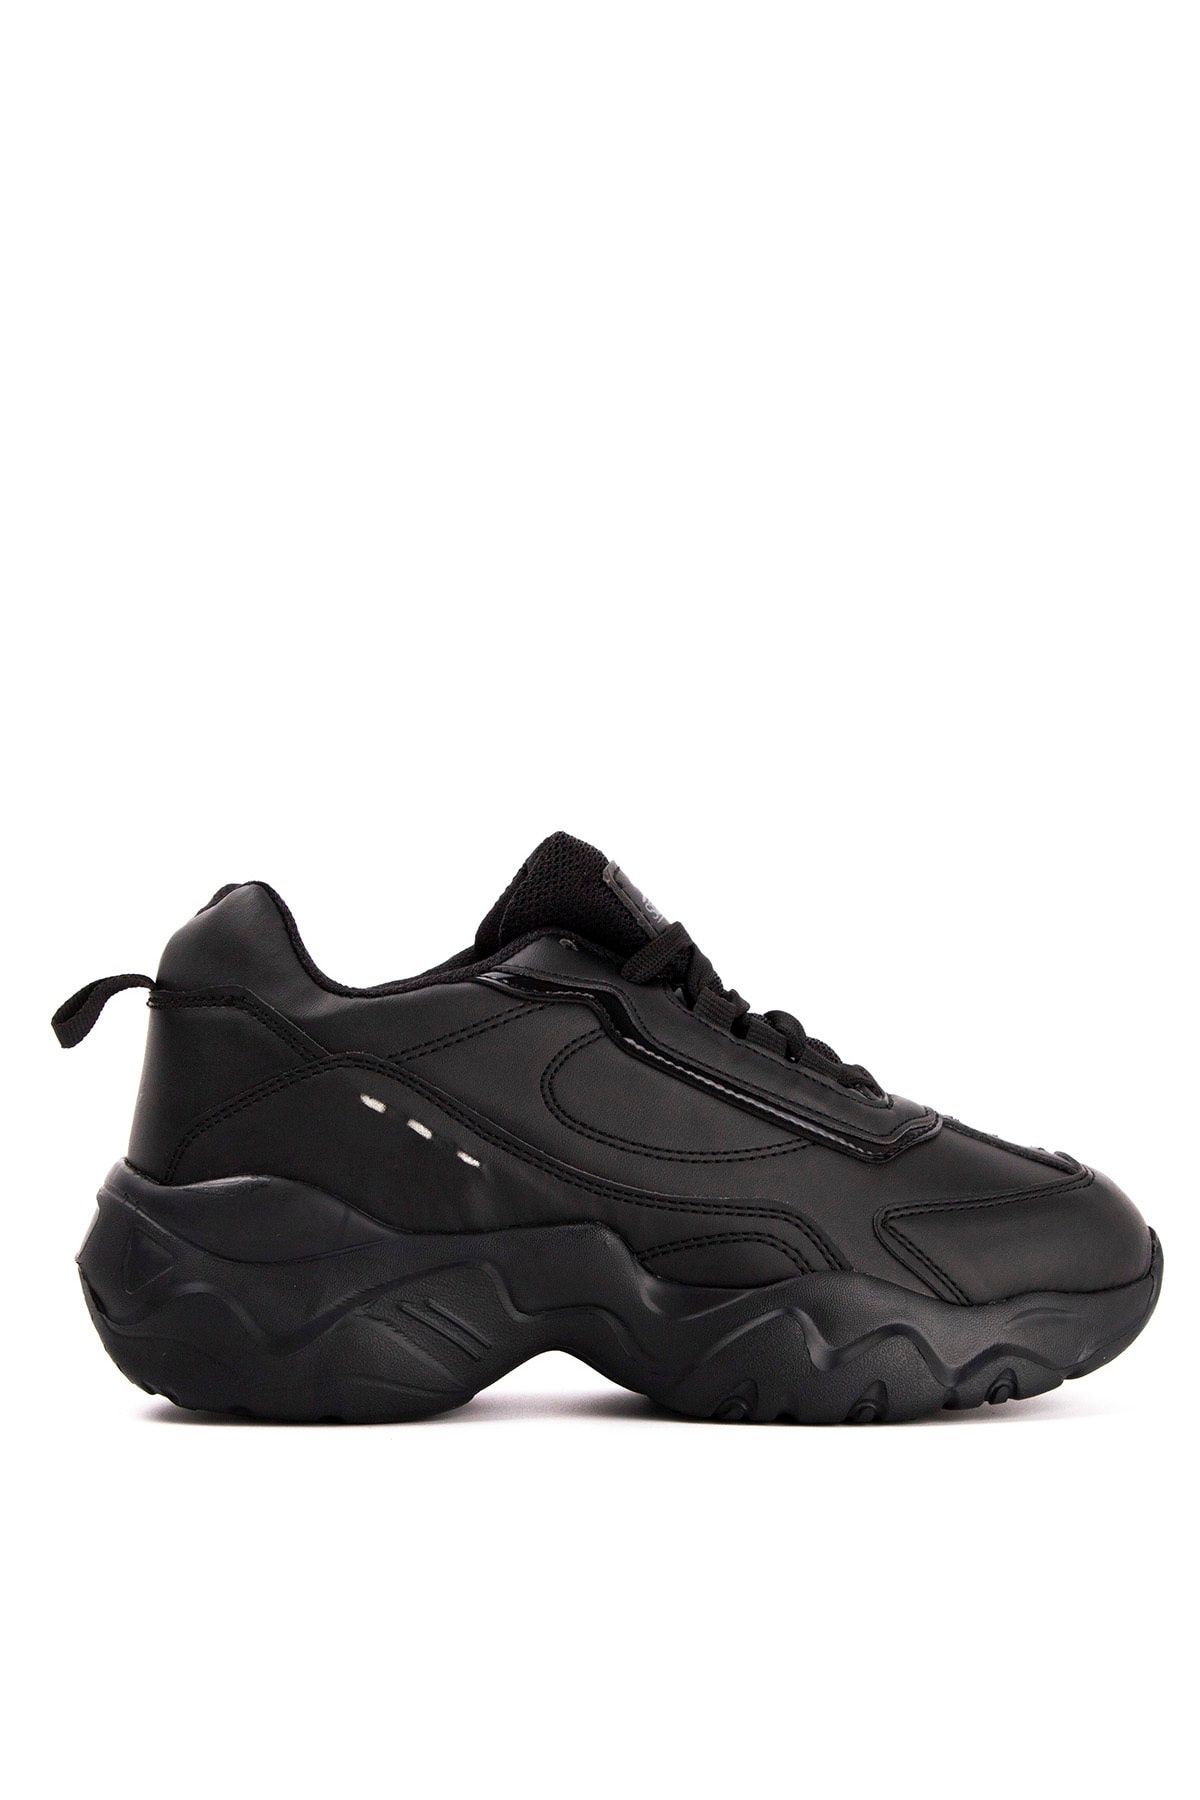 Slazenger Iguan Sneaker Kadın Ayakkabı Siyah Sa20lk031